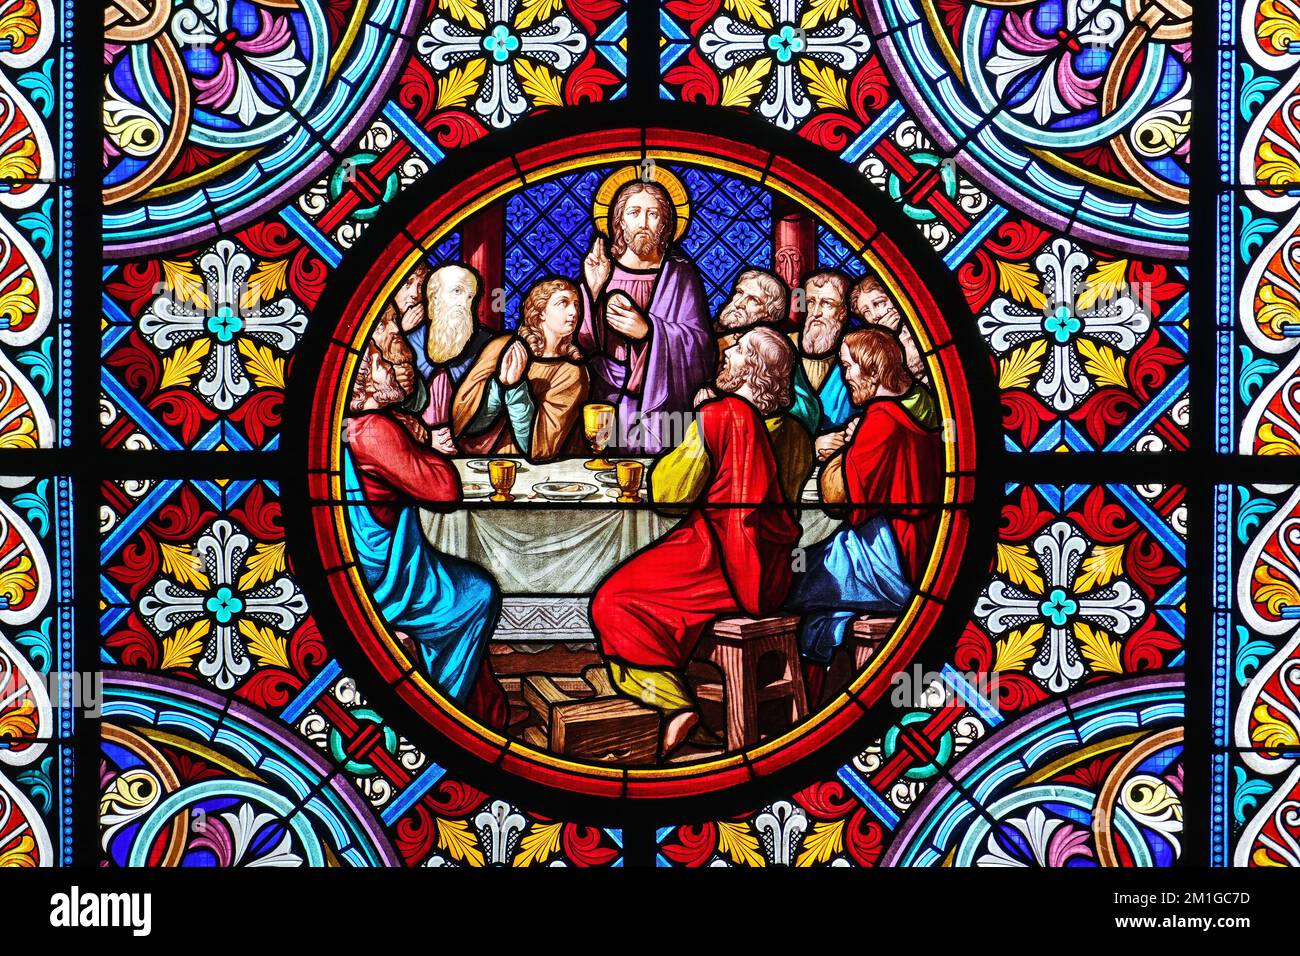 Cathédrale de Bâle. Fenêtre en vitrail. La Cène est le repas final que Jésus a partagé avec ses Apôtres. Bâle, Suisse - 20 décembre Banque D'Images